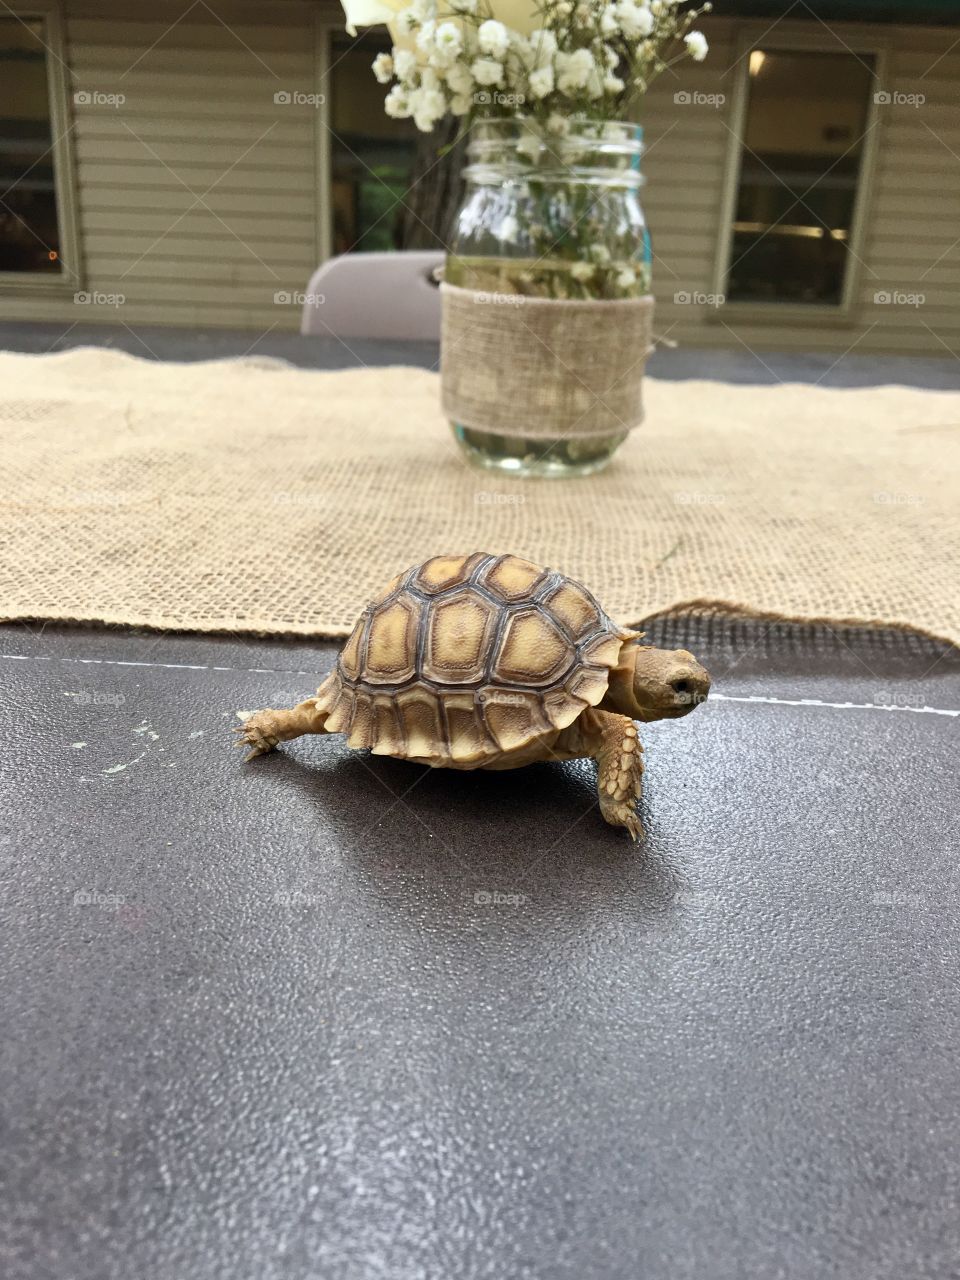 Tiny Tortoise